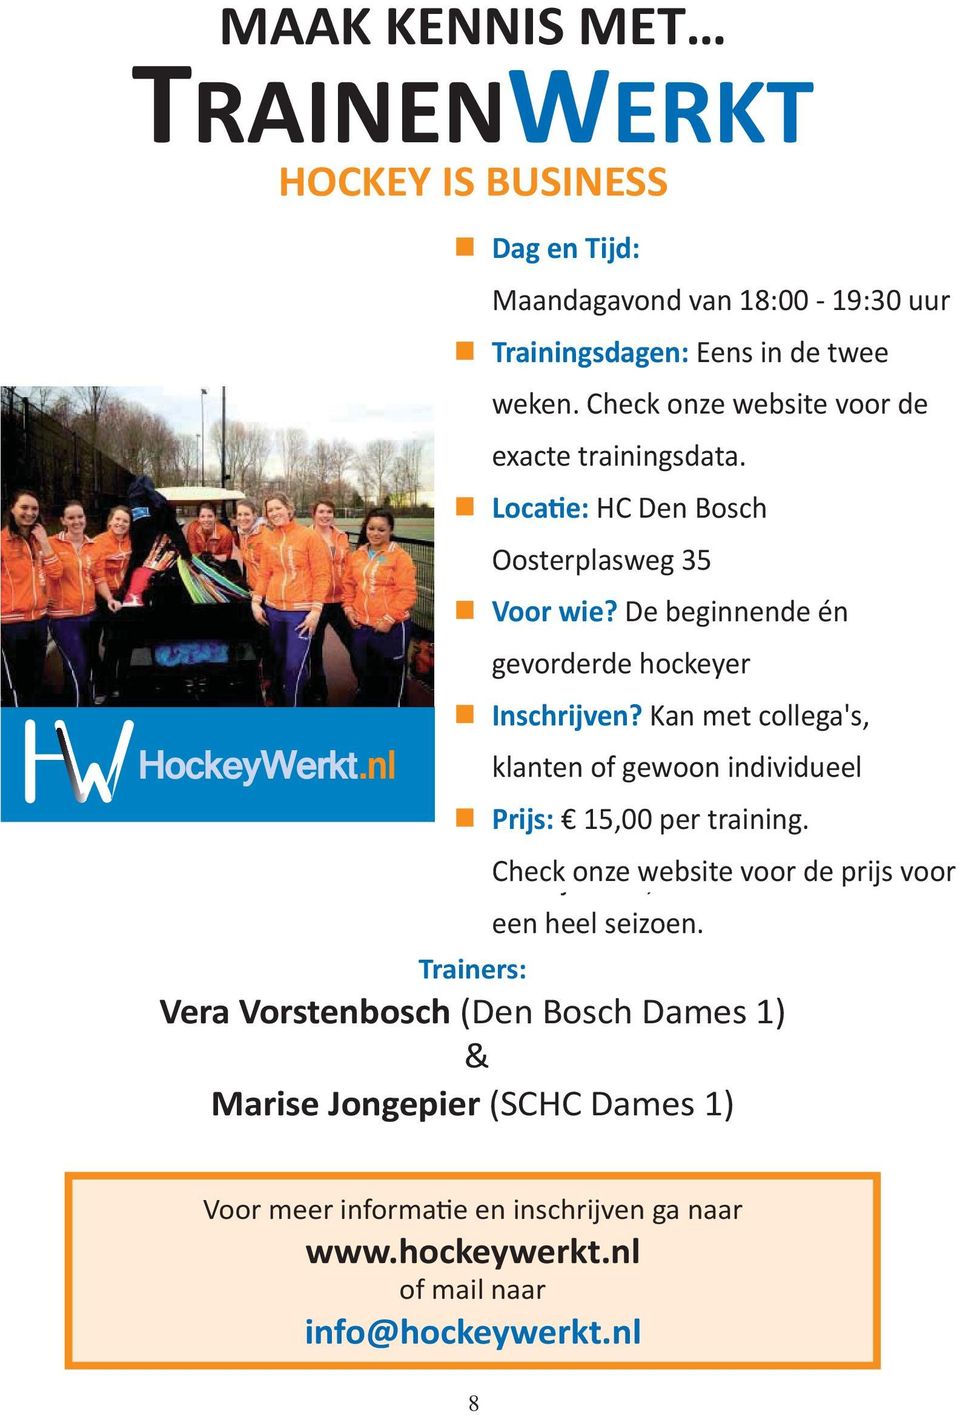 Via Kan www.hockeywerkt.nl met collega's, Prijs: klanten 10,00 of gewoon per avond. individueel Als Prijs: je meteen 15,00 voor per training. beide avonden inschrij Check onze 15,00.